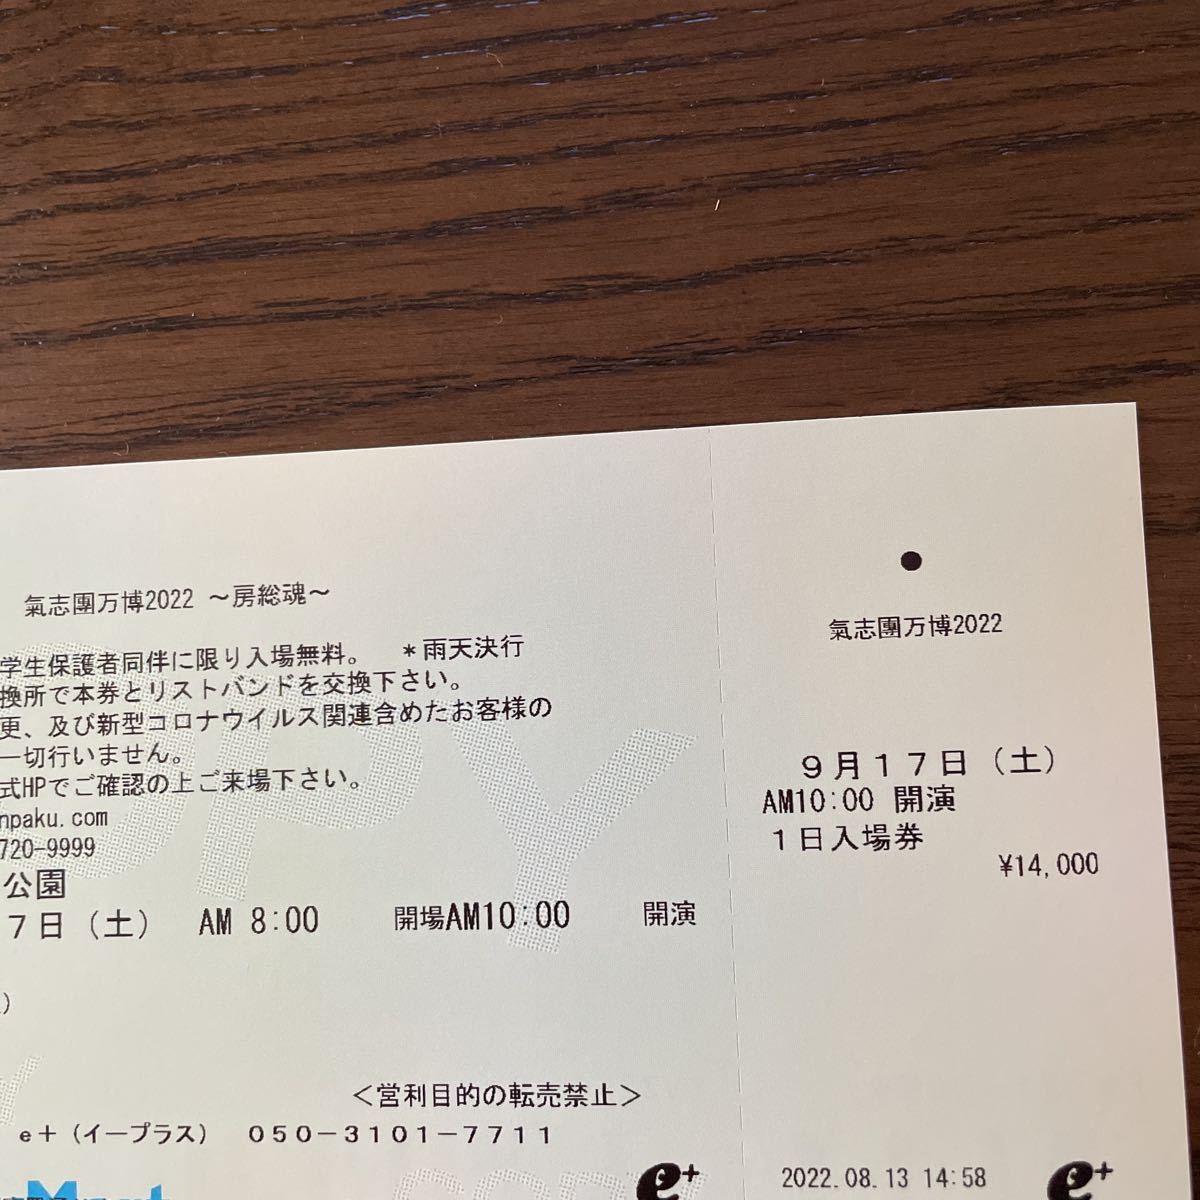 氣志團万博2022 初日(17日分)入場券 チケット 1枚 10,000円 - brandsynariourdu.com